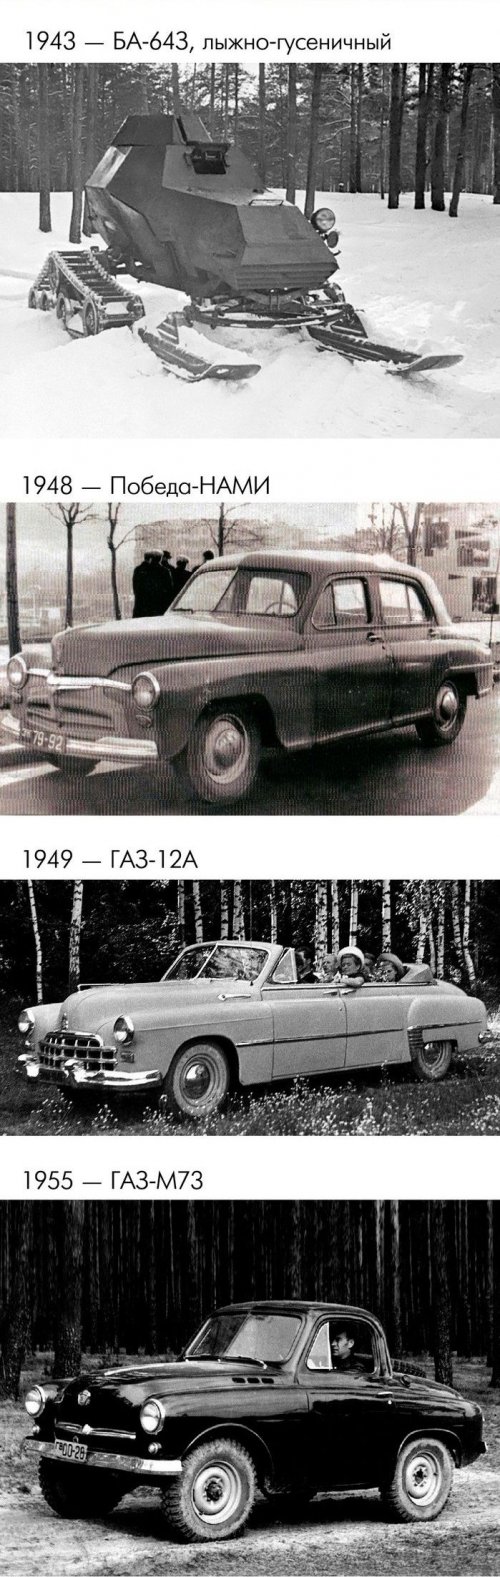 Концептуальные модели ГАЗ, не пошедшие в производство (26 фото)